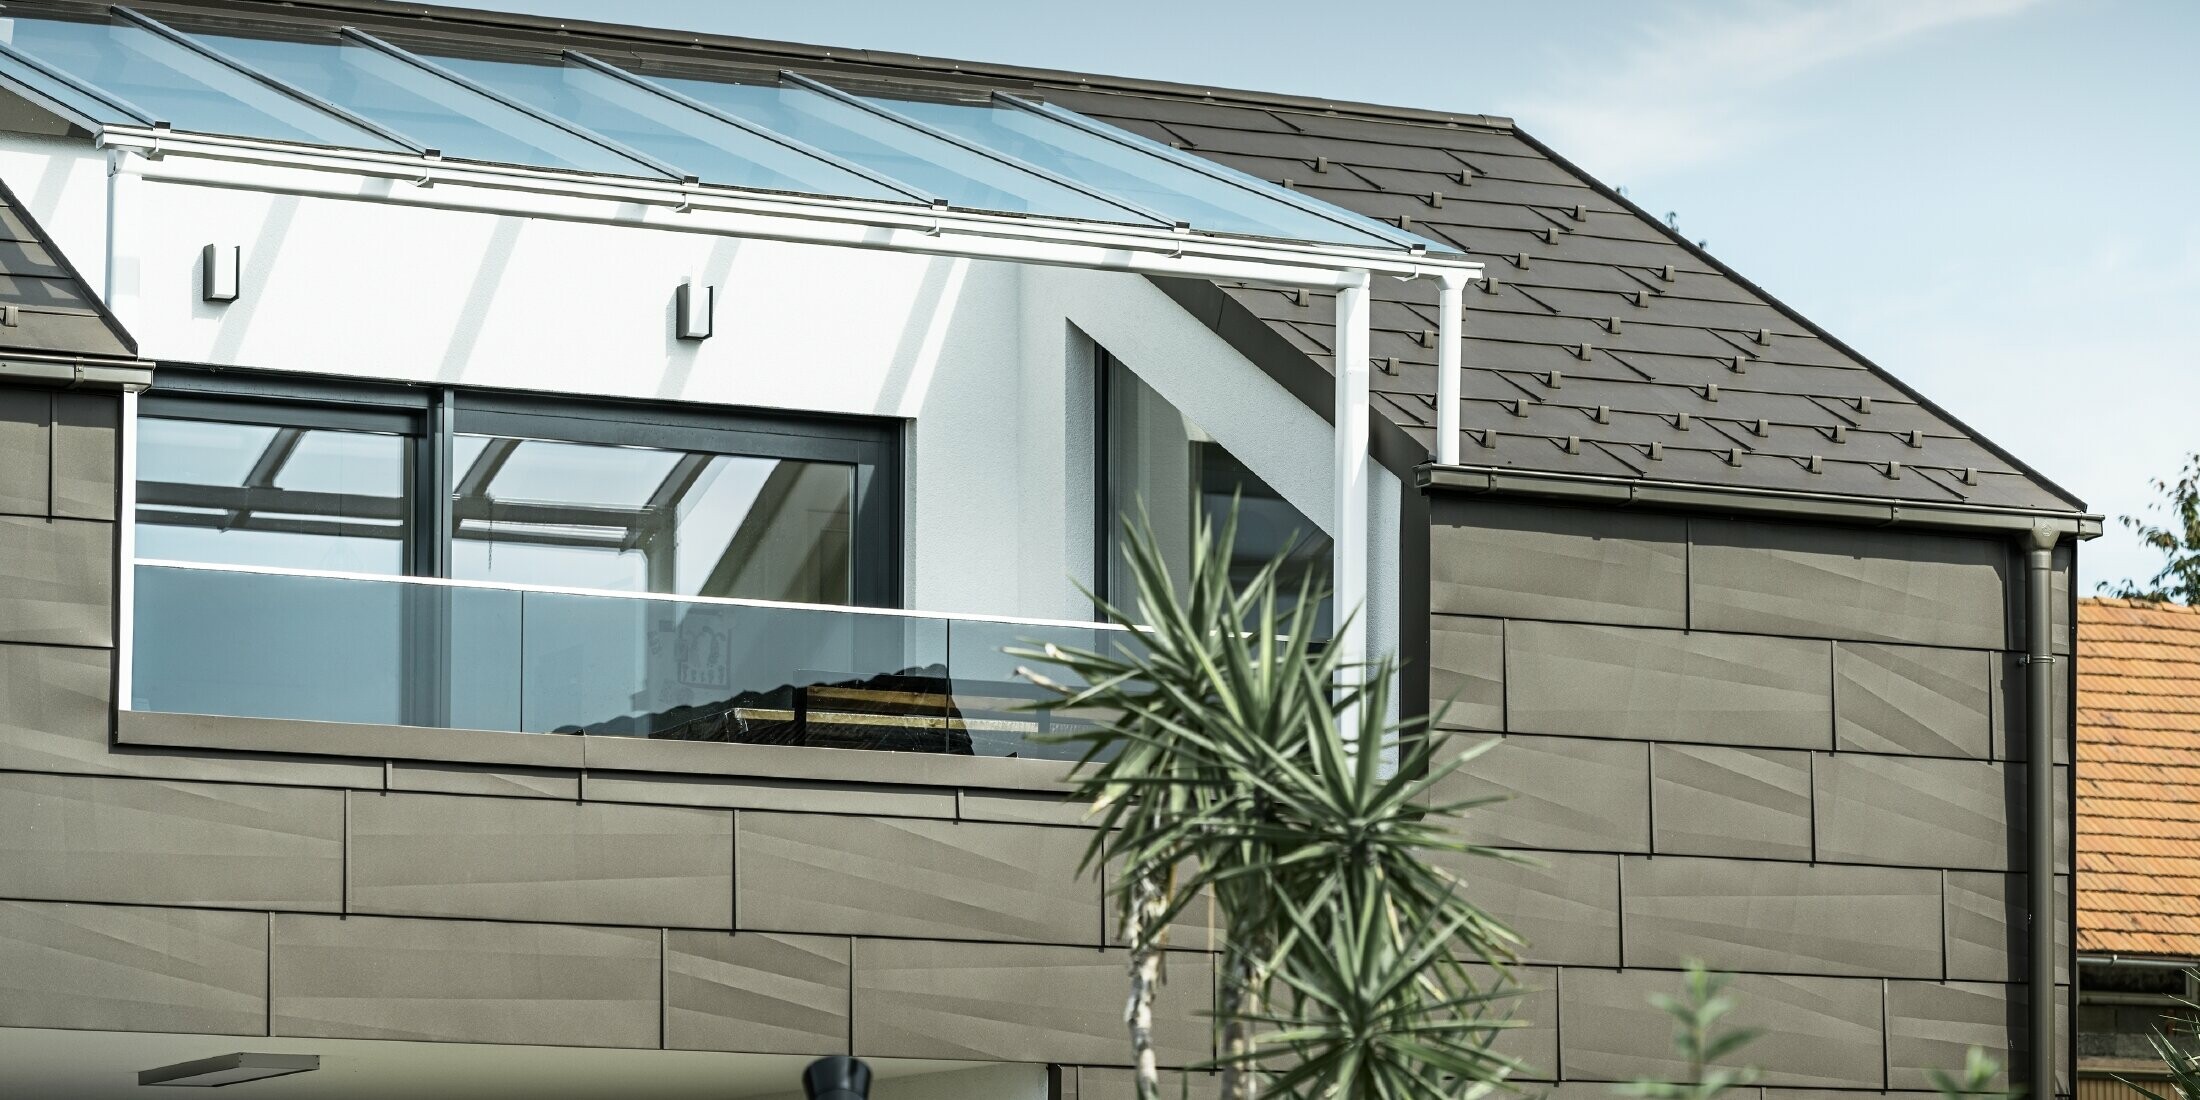 Prizidek s strešno teraso s celovitim sistemom PREFA, na strehi in fasadi so uporabljeni strešni in fasadni paneli PREFA FX.12. Poleg tega je uporabljen pravokotni žleb PREFA z odtočno cevjo in bogato paleto dodatnih elementov v rjavi barvi za odvodnjavanje strehe.